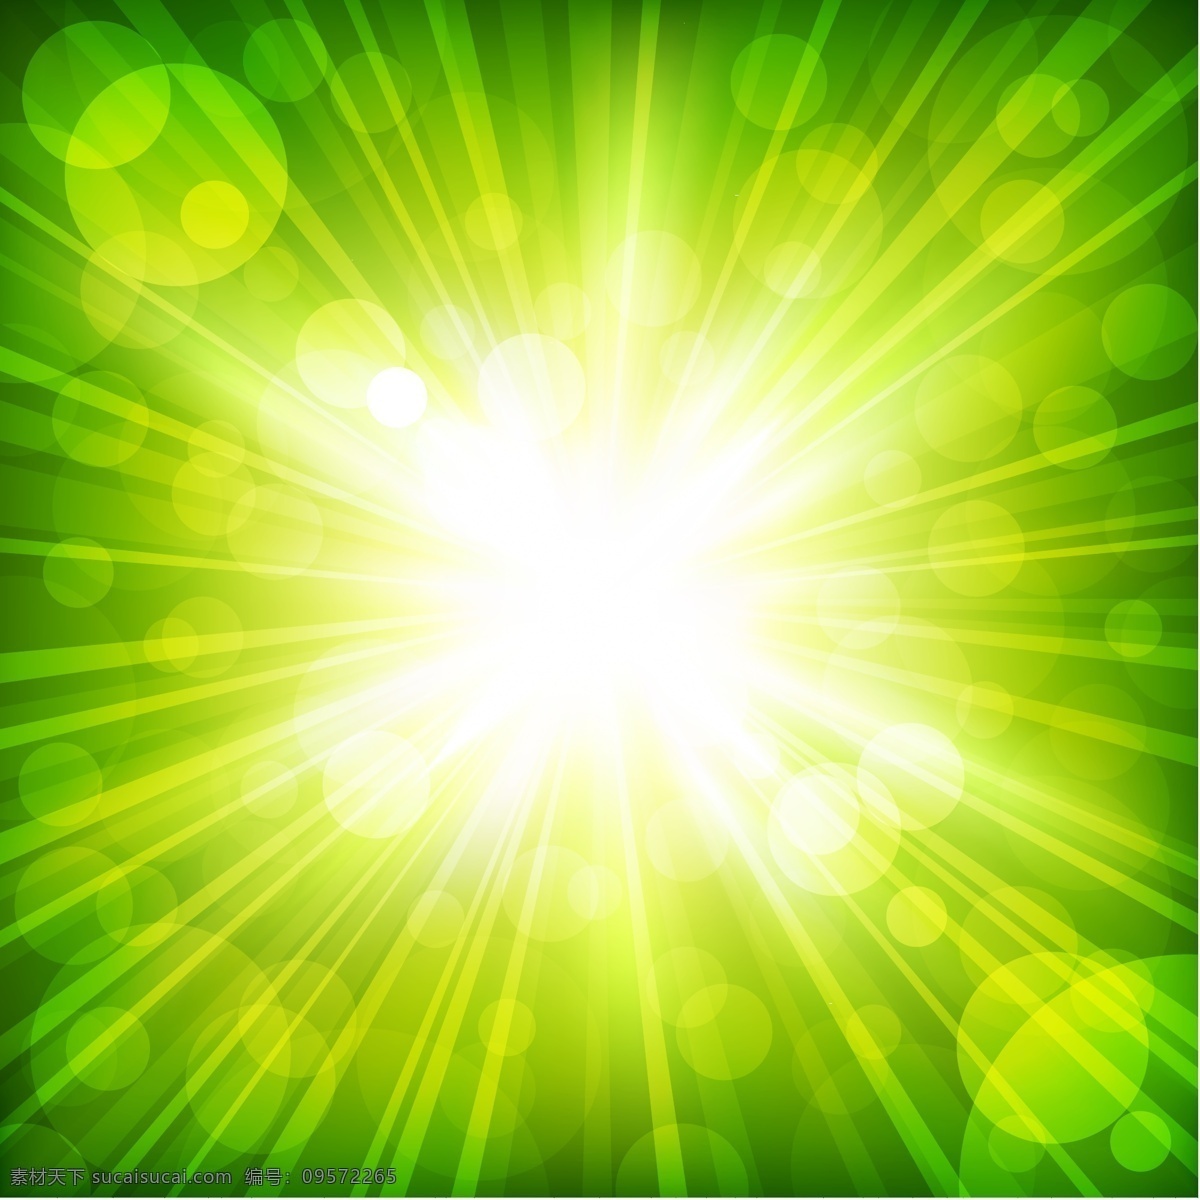 绿色 光线 照射 效果 背景 矢量 矢量背景 绿色素材 绿色背景 光线矢量 光线素材 光线背景 绿色矢量